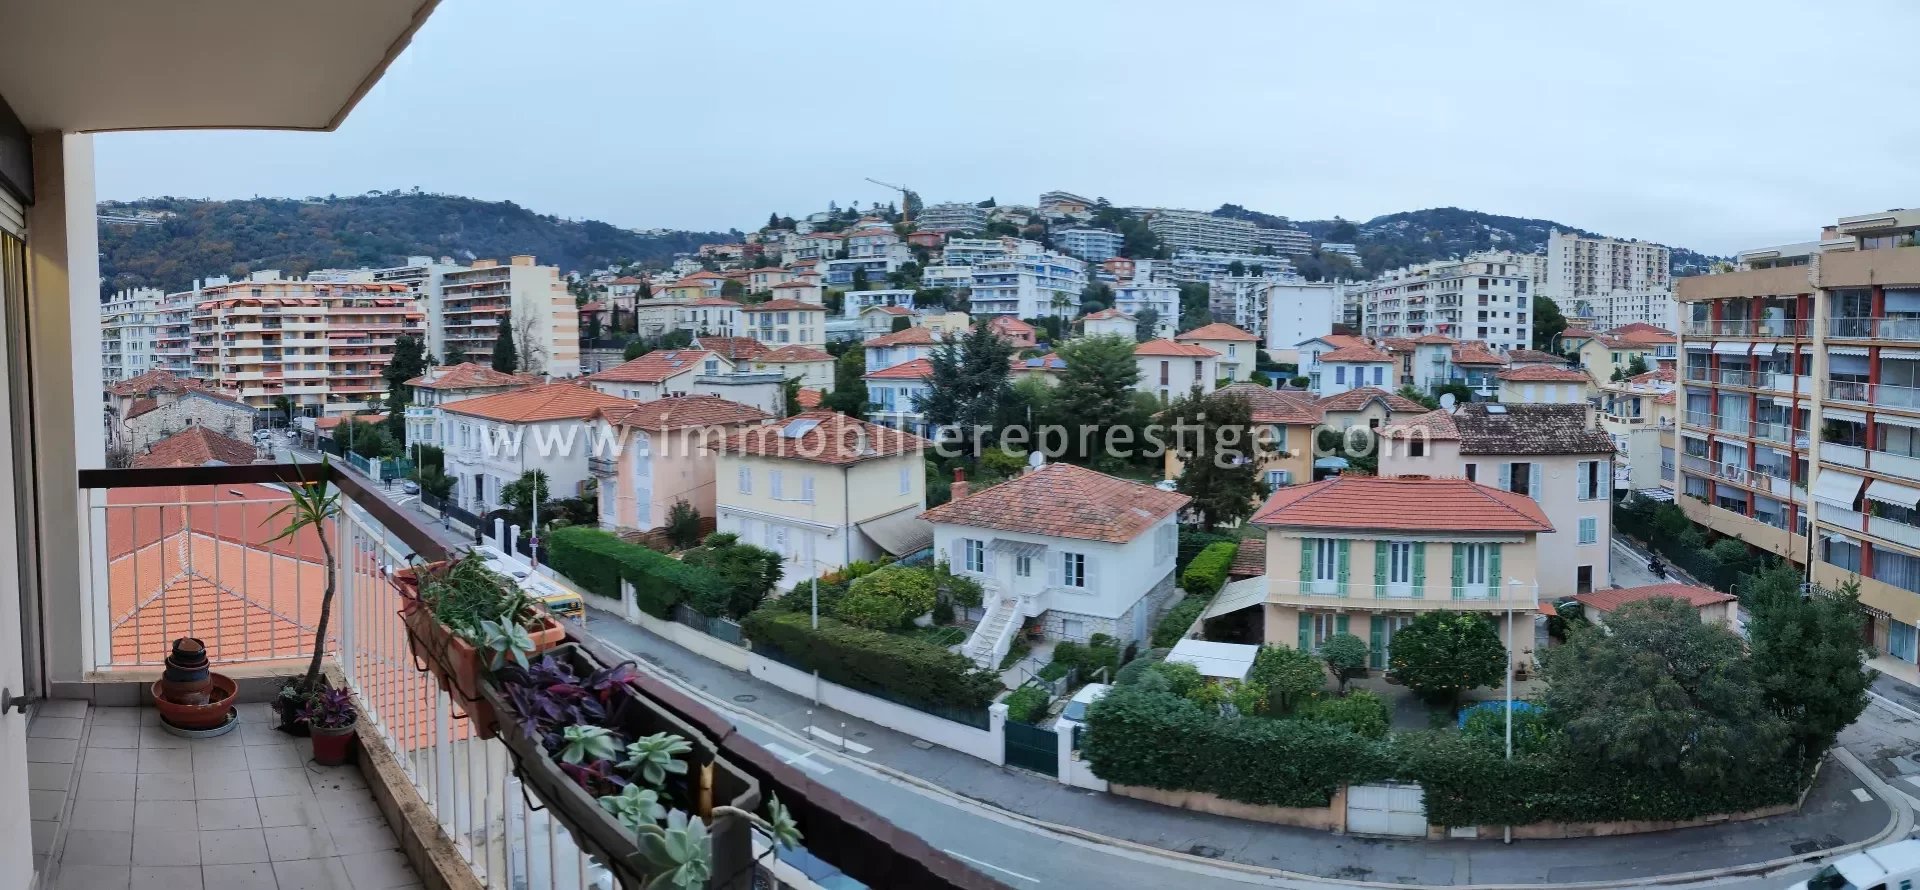 Vente Appartement 78m² 4 Pièces à Nice (06000) - Immobilière Prestige